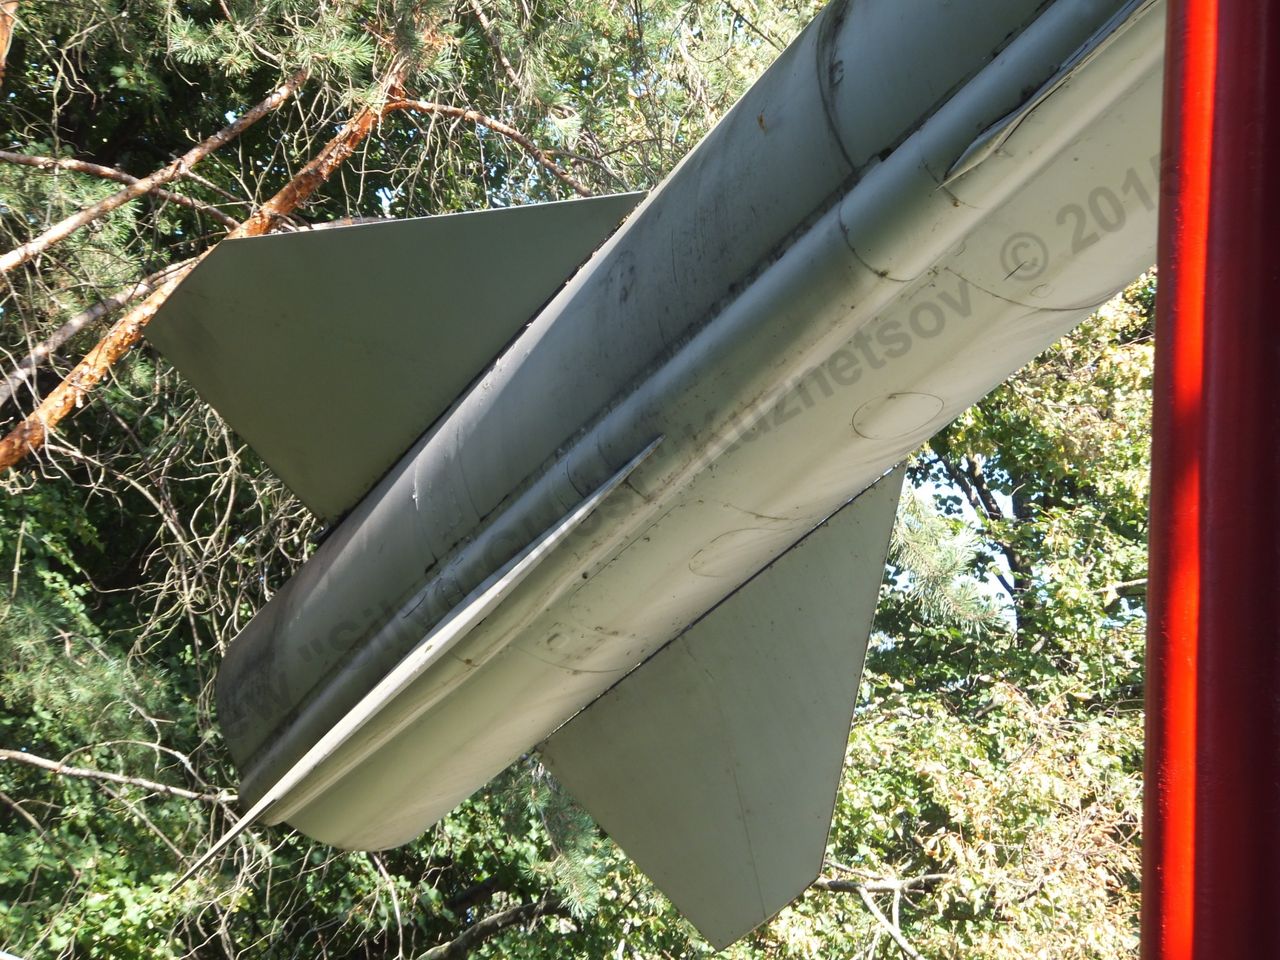 Kh-22 missile_0064.jpg